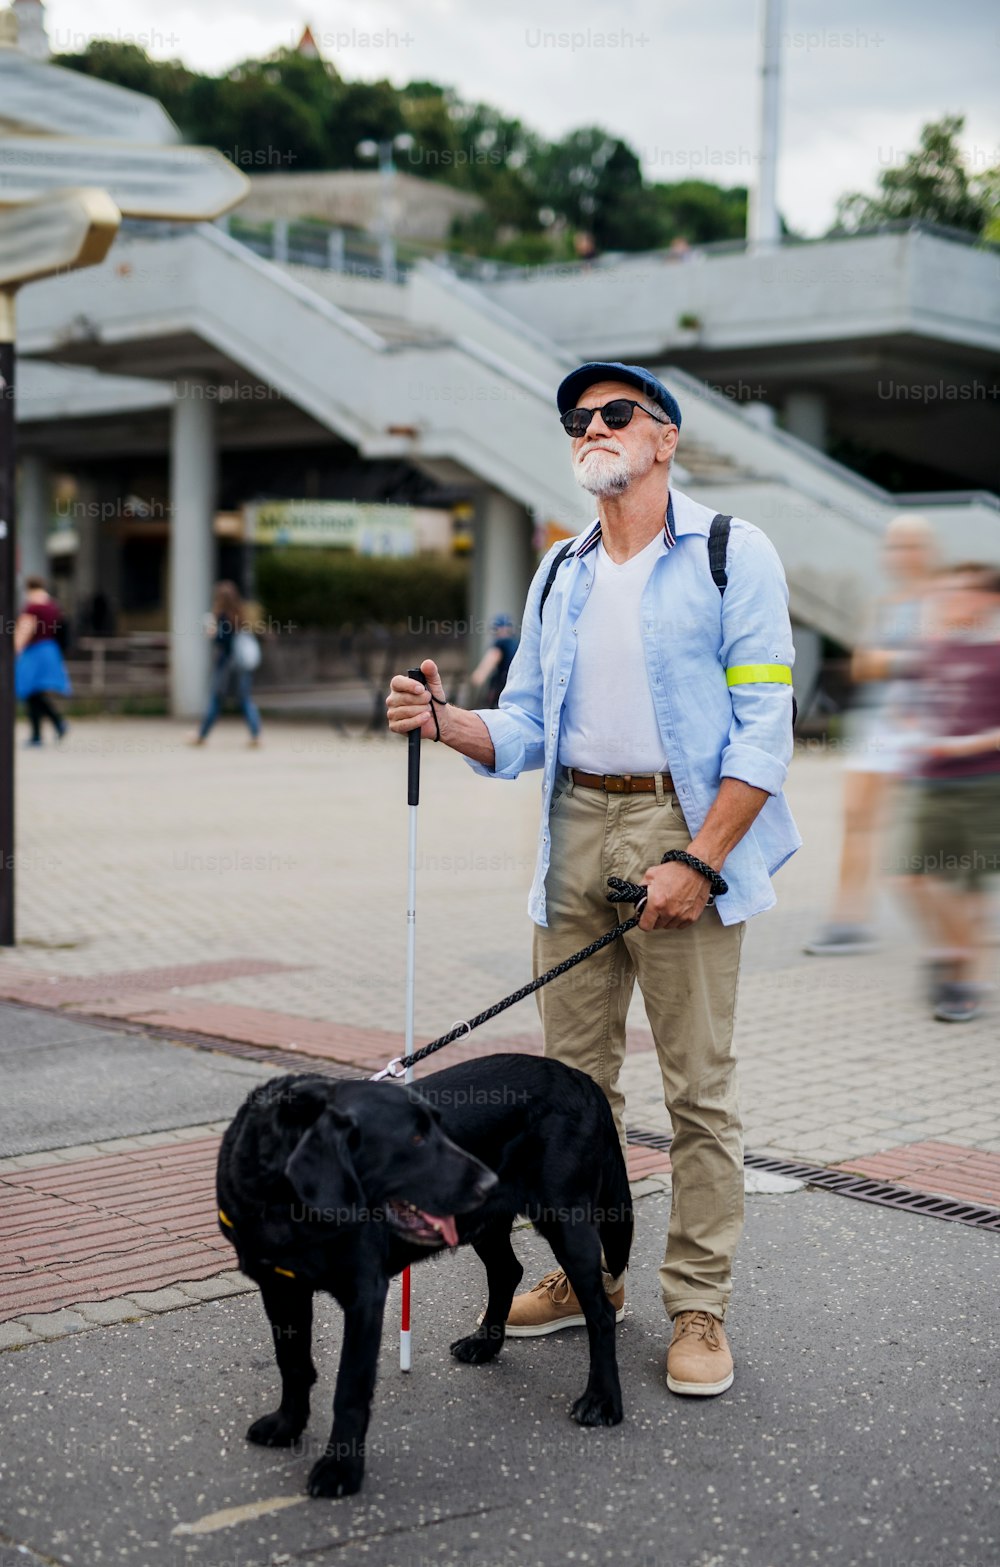 Un ciego mayor con perro guía parado al aire libre en la ciudad.